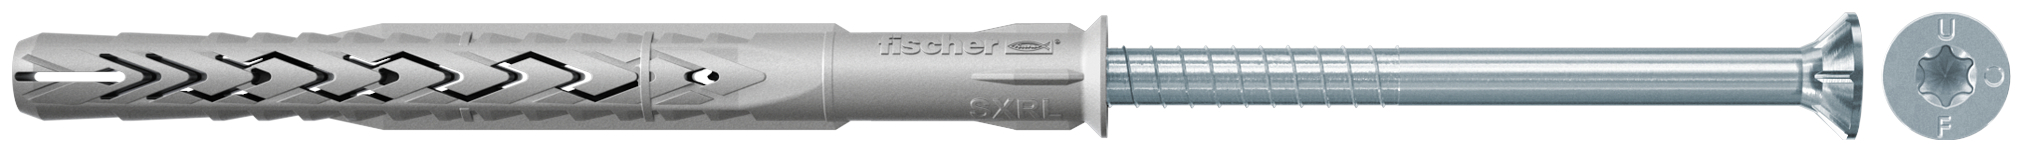 fischer Tasselli prolungati SXRL 14X360 T (1 Pz.) Tassello prolungato in nylon con marcatura CE con vite premontata T.S.P. impronta torx.